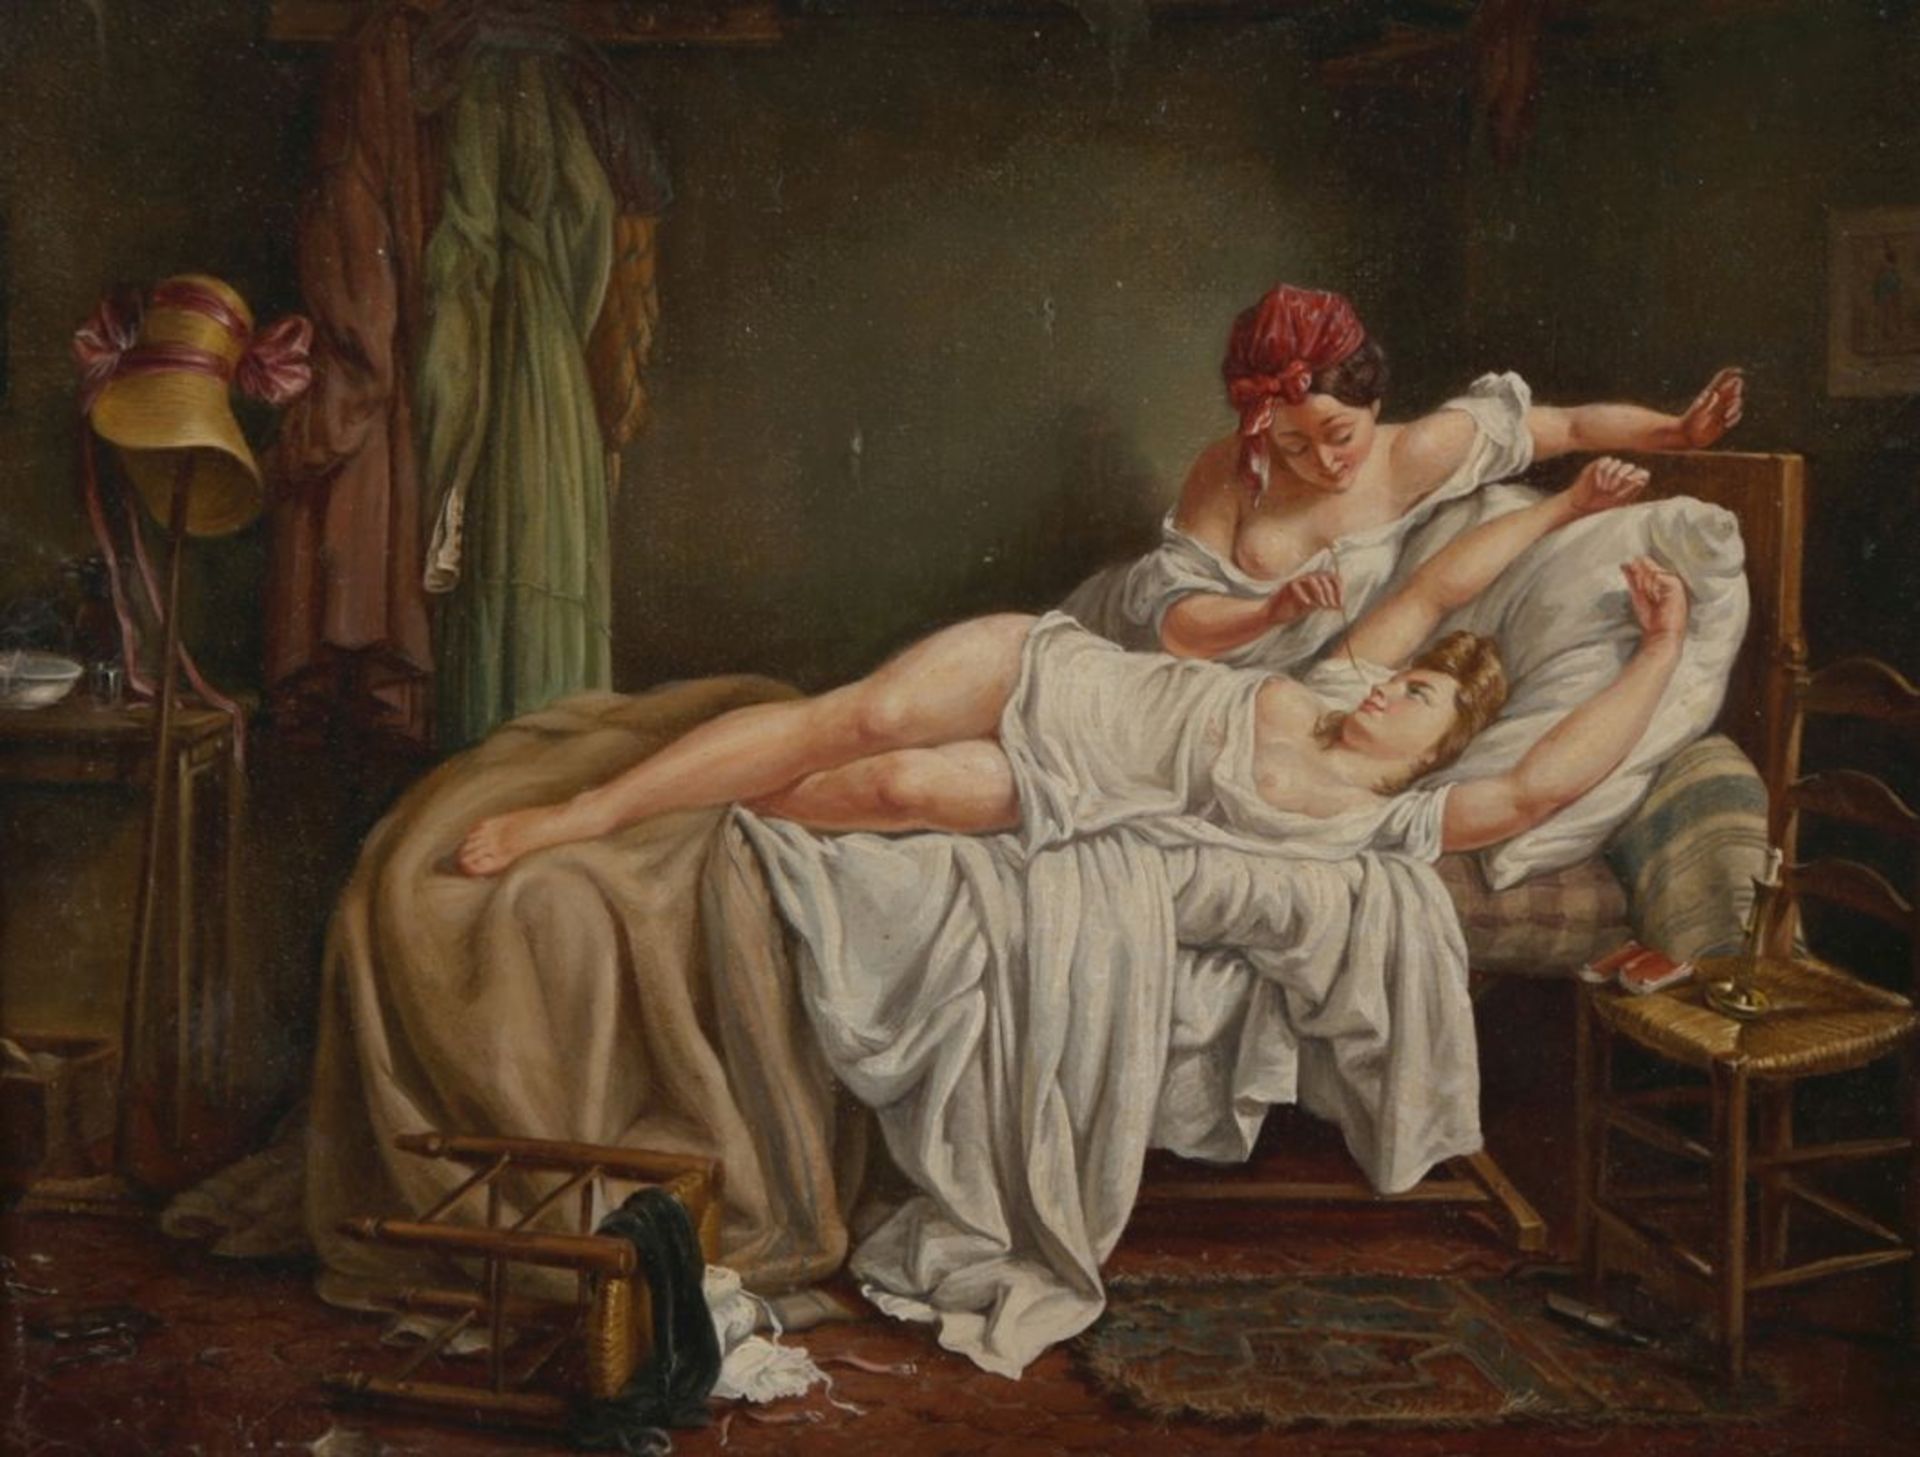 Anonymer Maler, wohl Italien, um 1850. "Neckisches Spiel", Öl/Lw., 23 x 30 cm